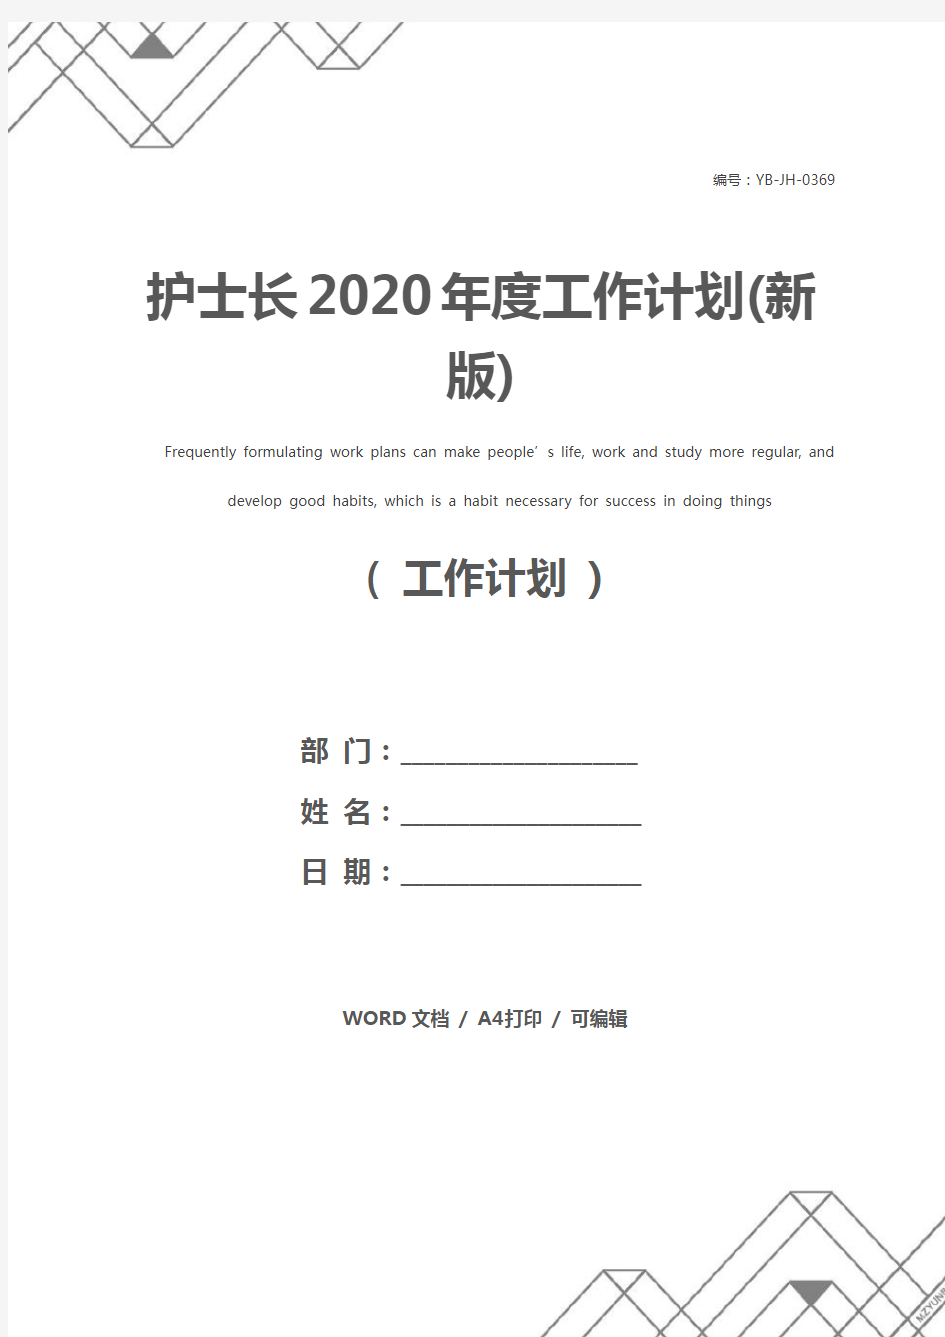 护士长2020年度工作计划(新版)